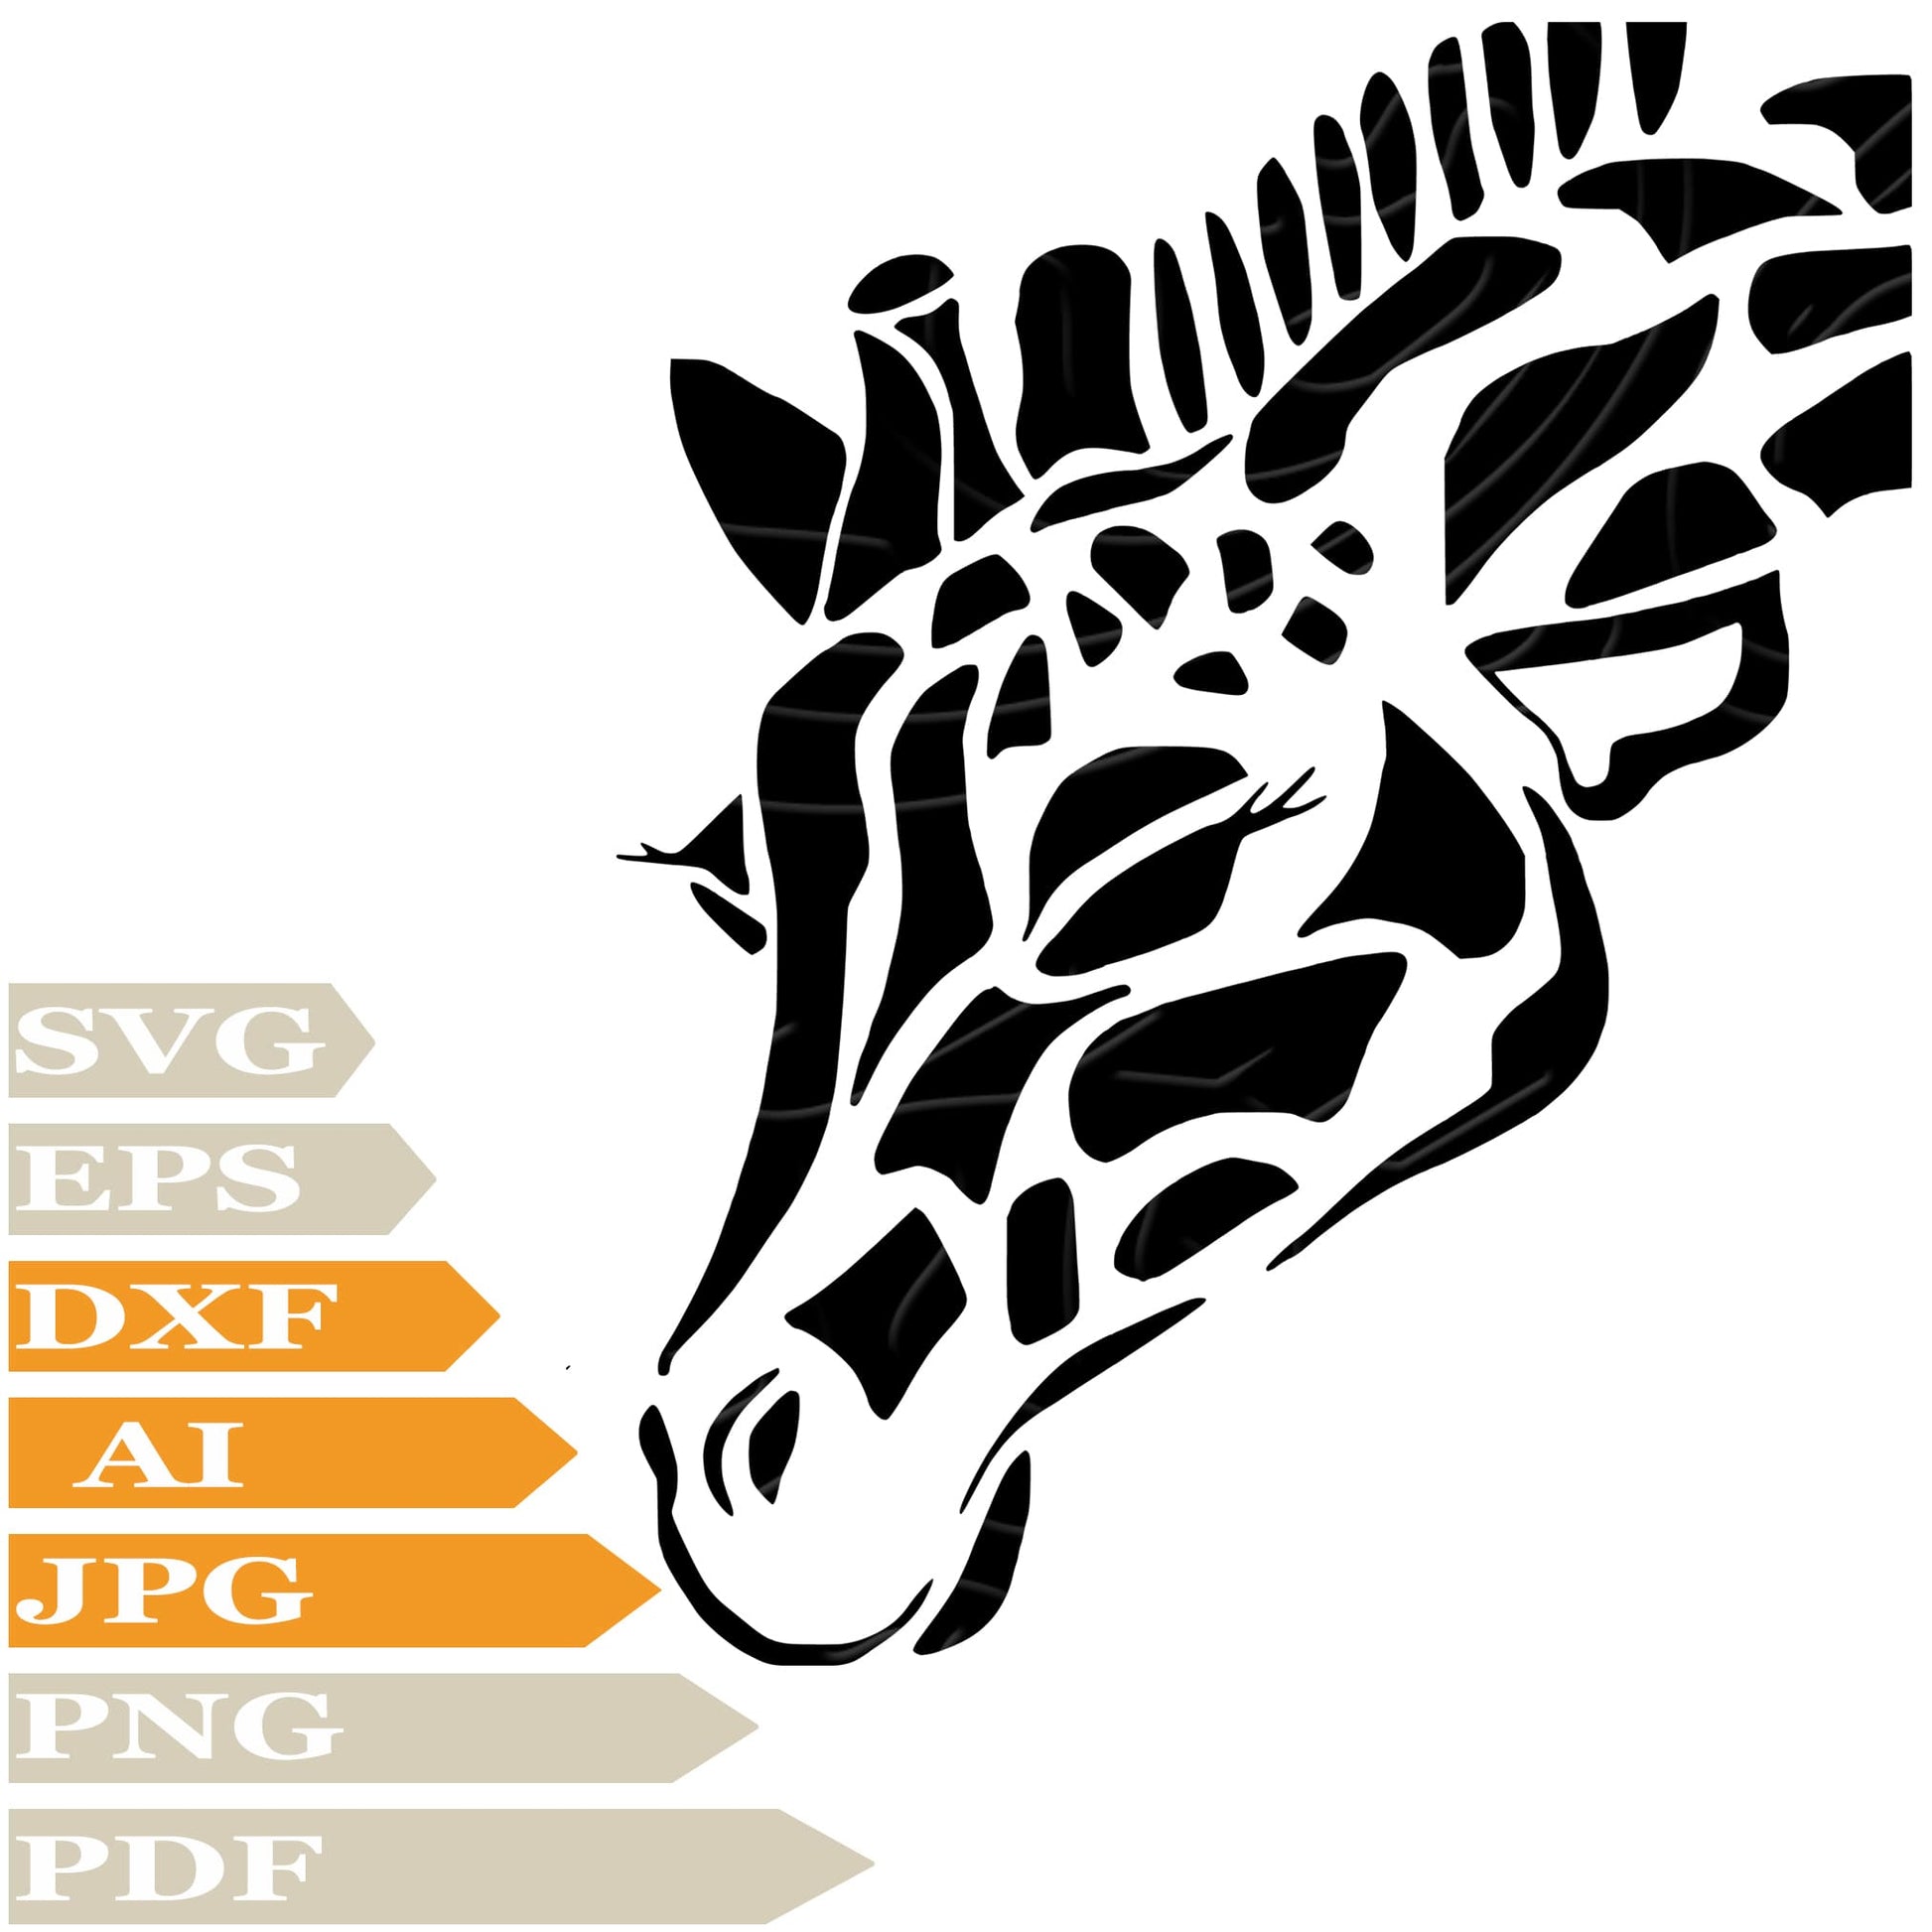 Giraffe ﻿SVG, Cute Giraffe SVG Design, Giraffe Head PNG, Giraffe Vector Graphics, Giraffe For Cricut, Digital Instant Download, Clip Art, Cut File, T-Shirts, Silhouette